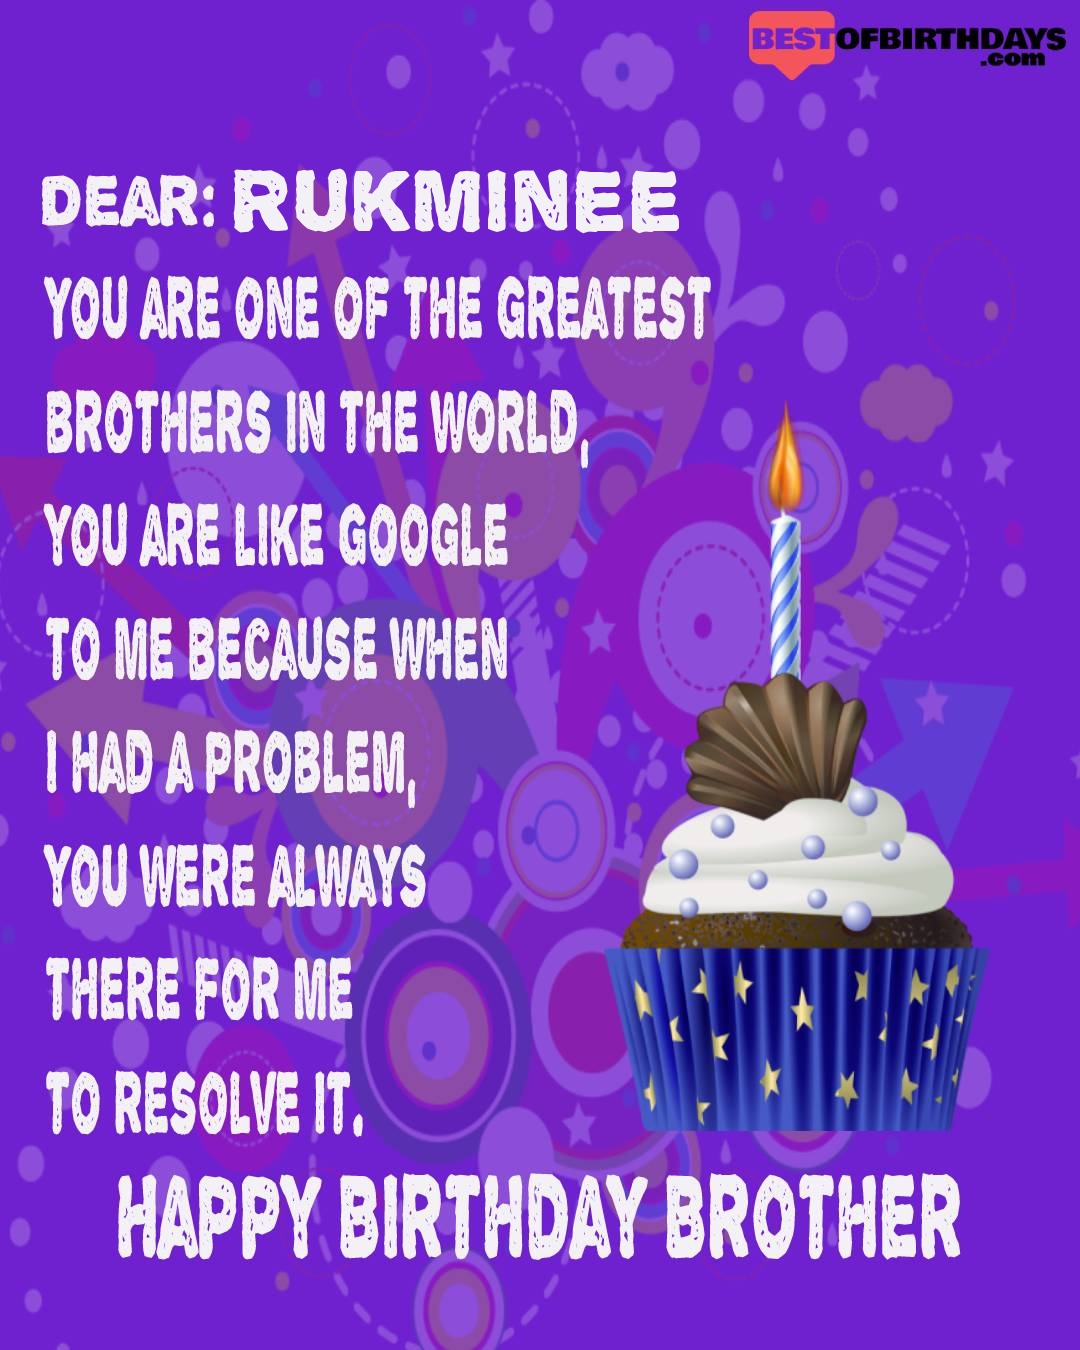 Happy birthday rukminee bhai brother bro